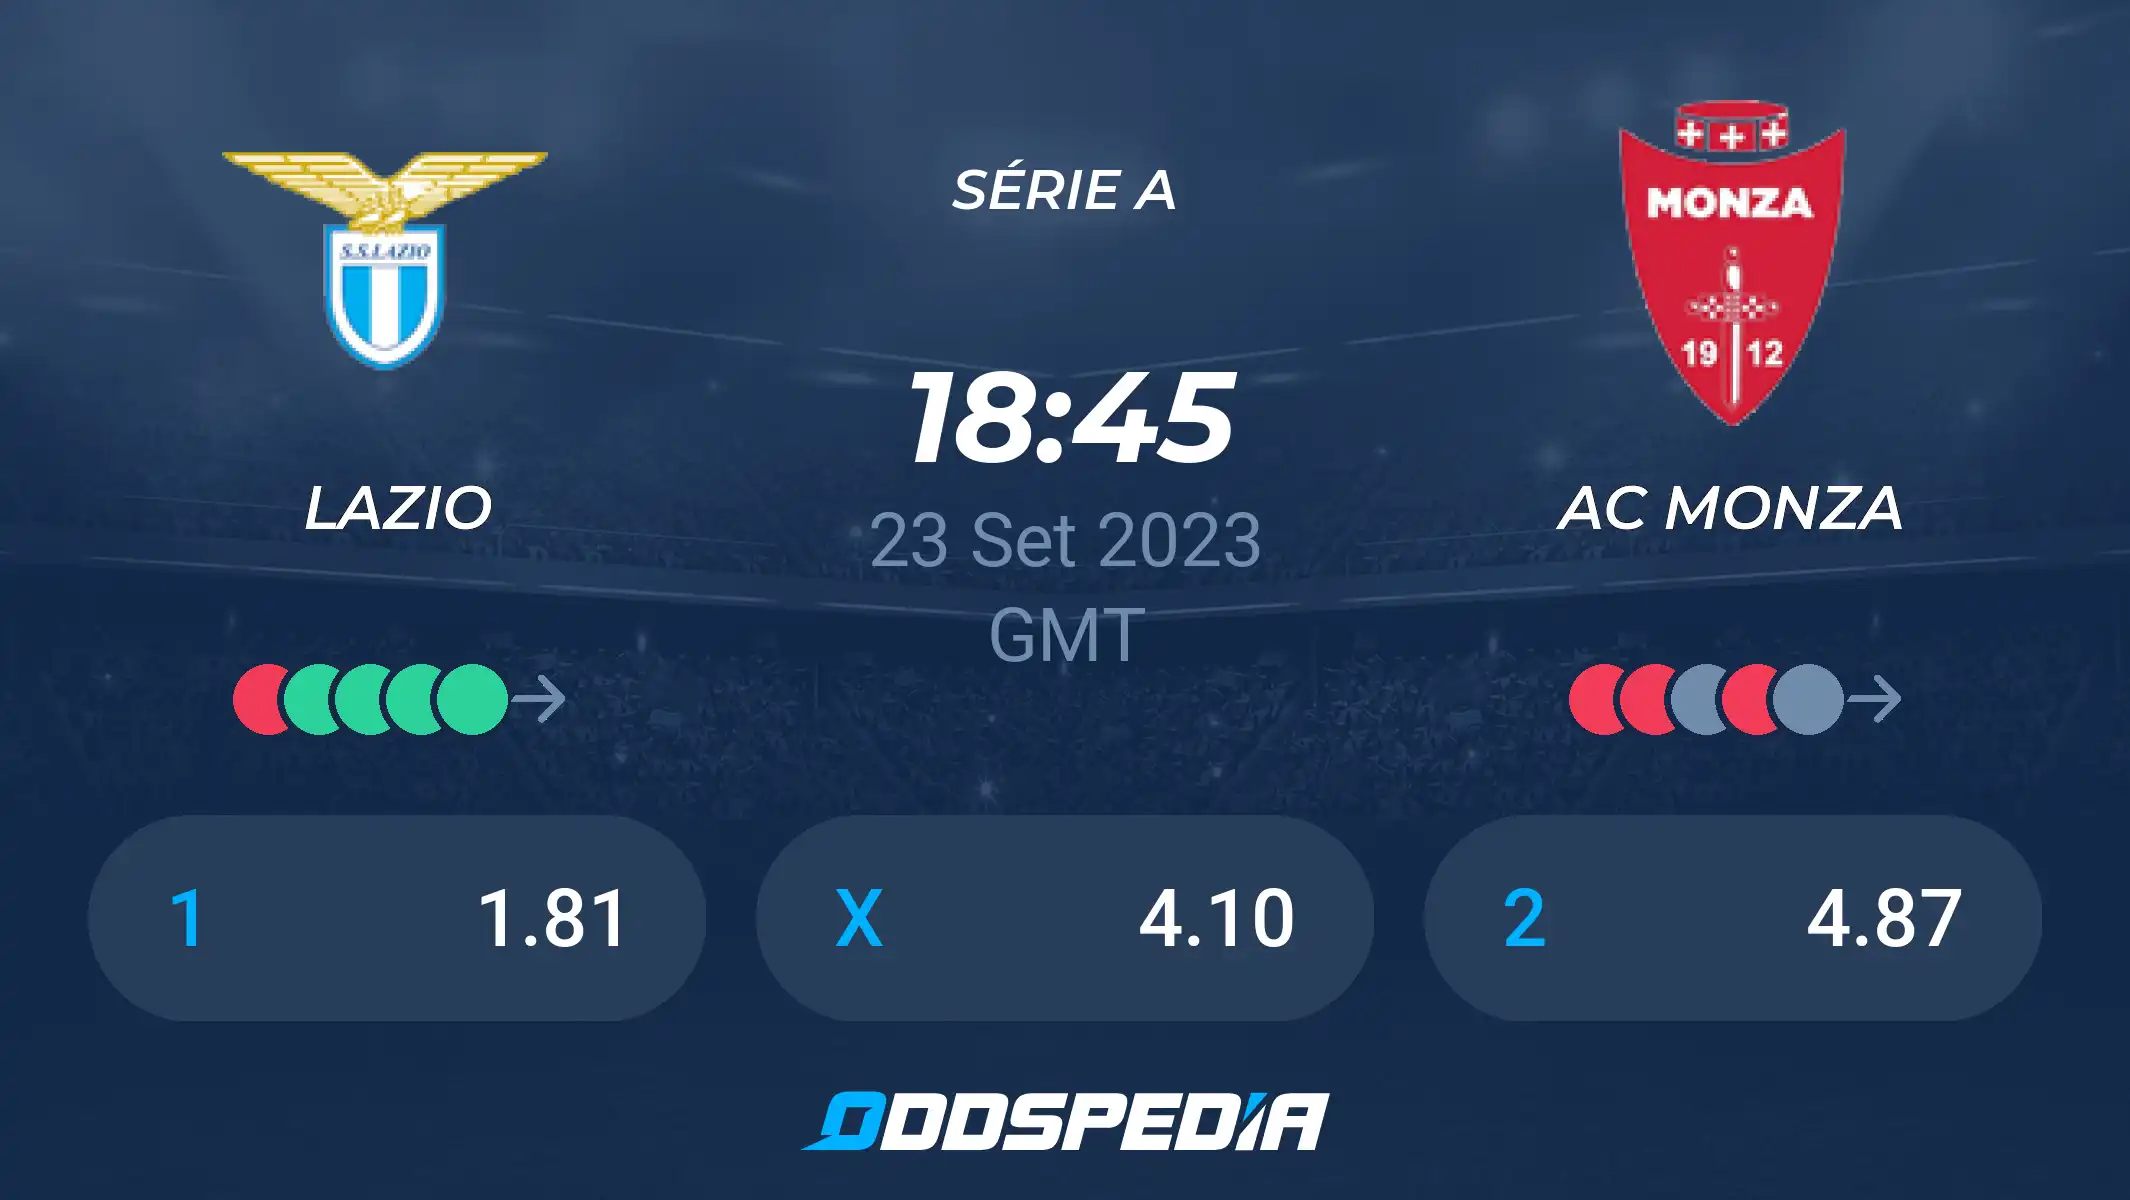 A.C. Monza vs Lazio: A Clash of Titans